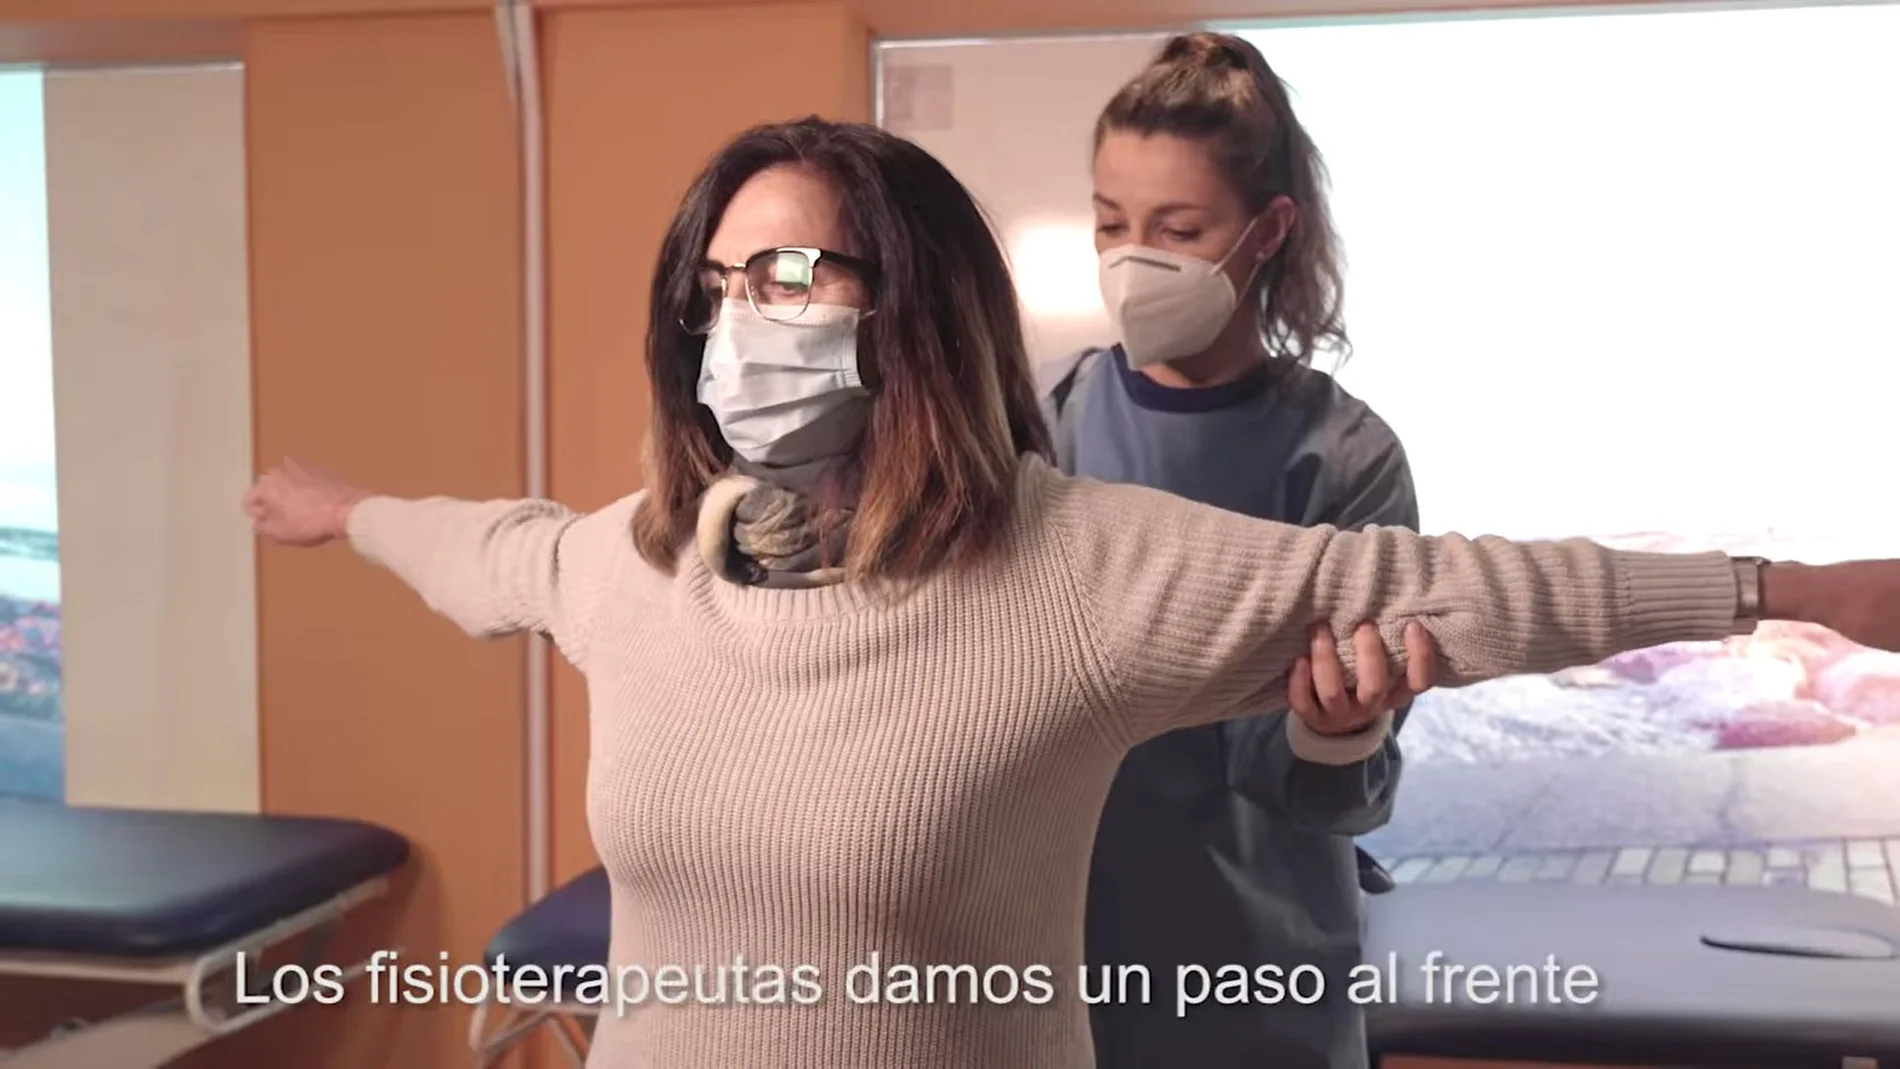 El Consejo General de Colegios de Fisioterapeutas de España activa una campaña en redes sociales para reflejar el trabajo realizado durante la crisis del coronavirus por este colectivo, presentándose como factor esencial en la vuelta a la normalidad